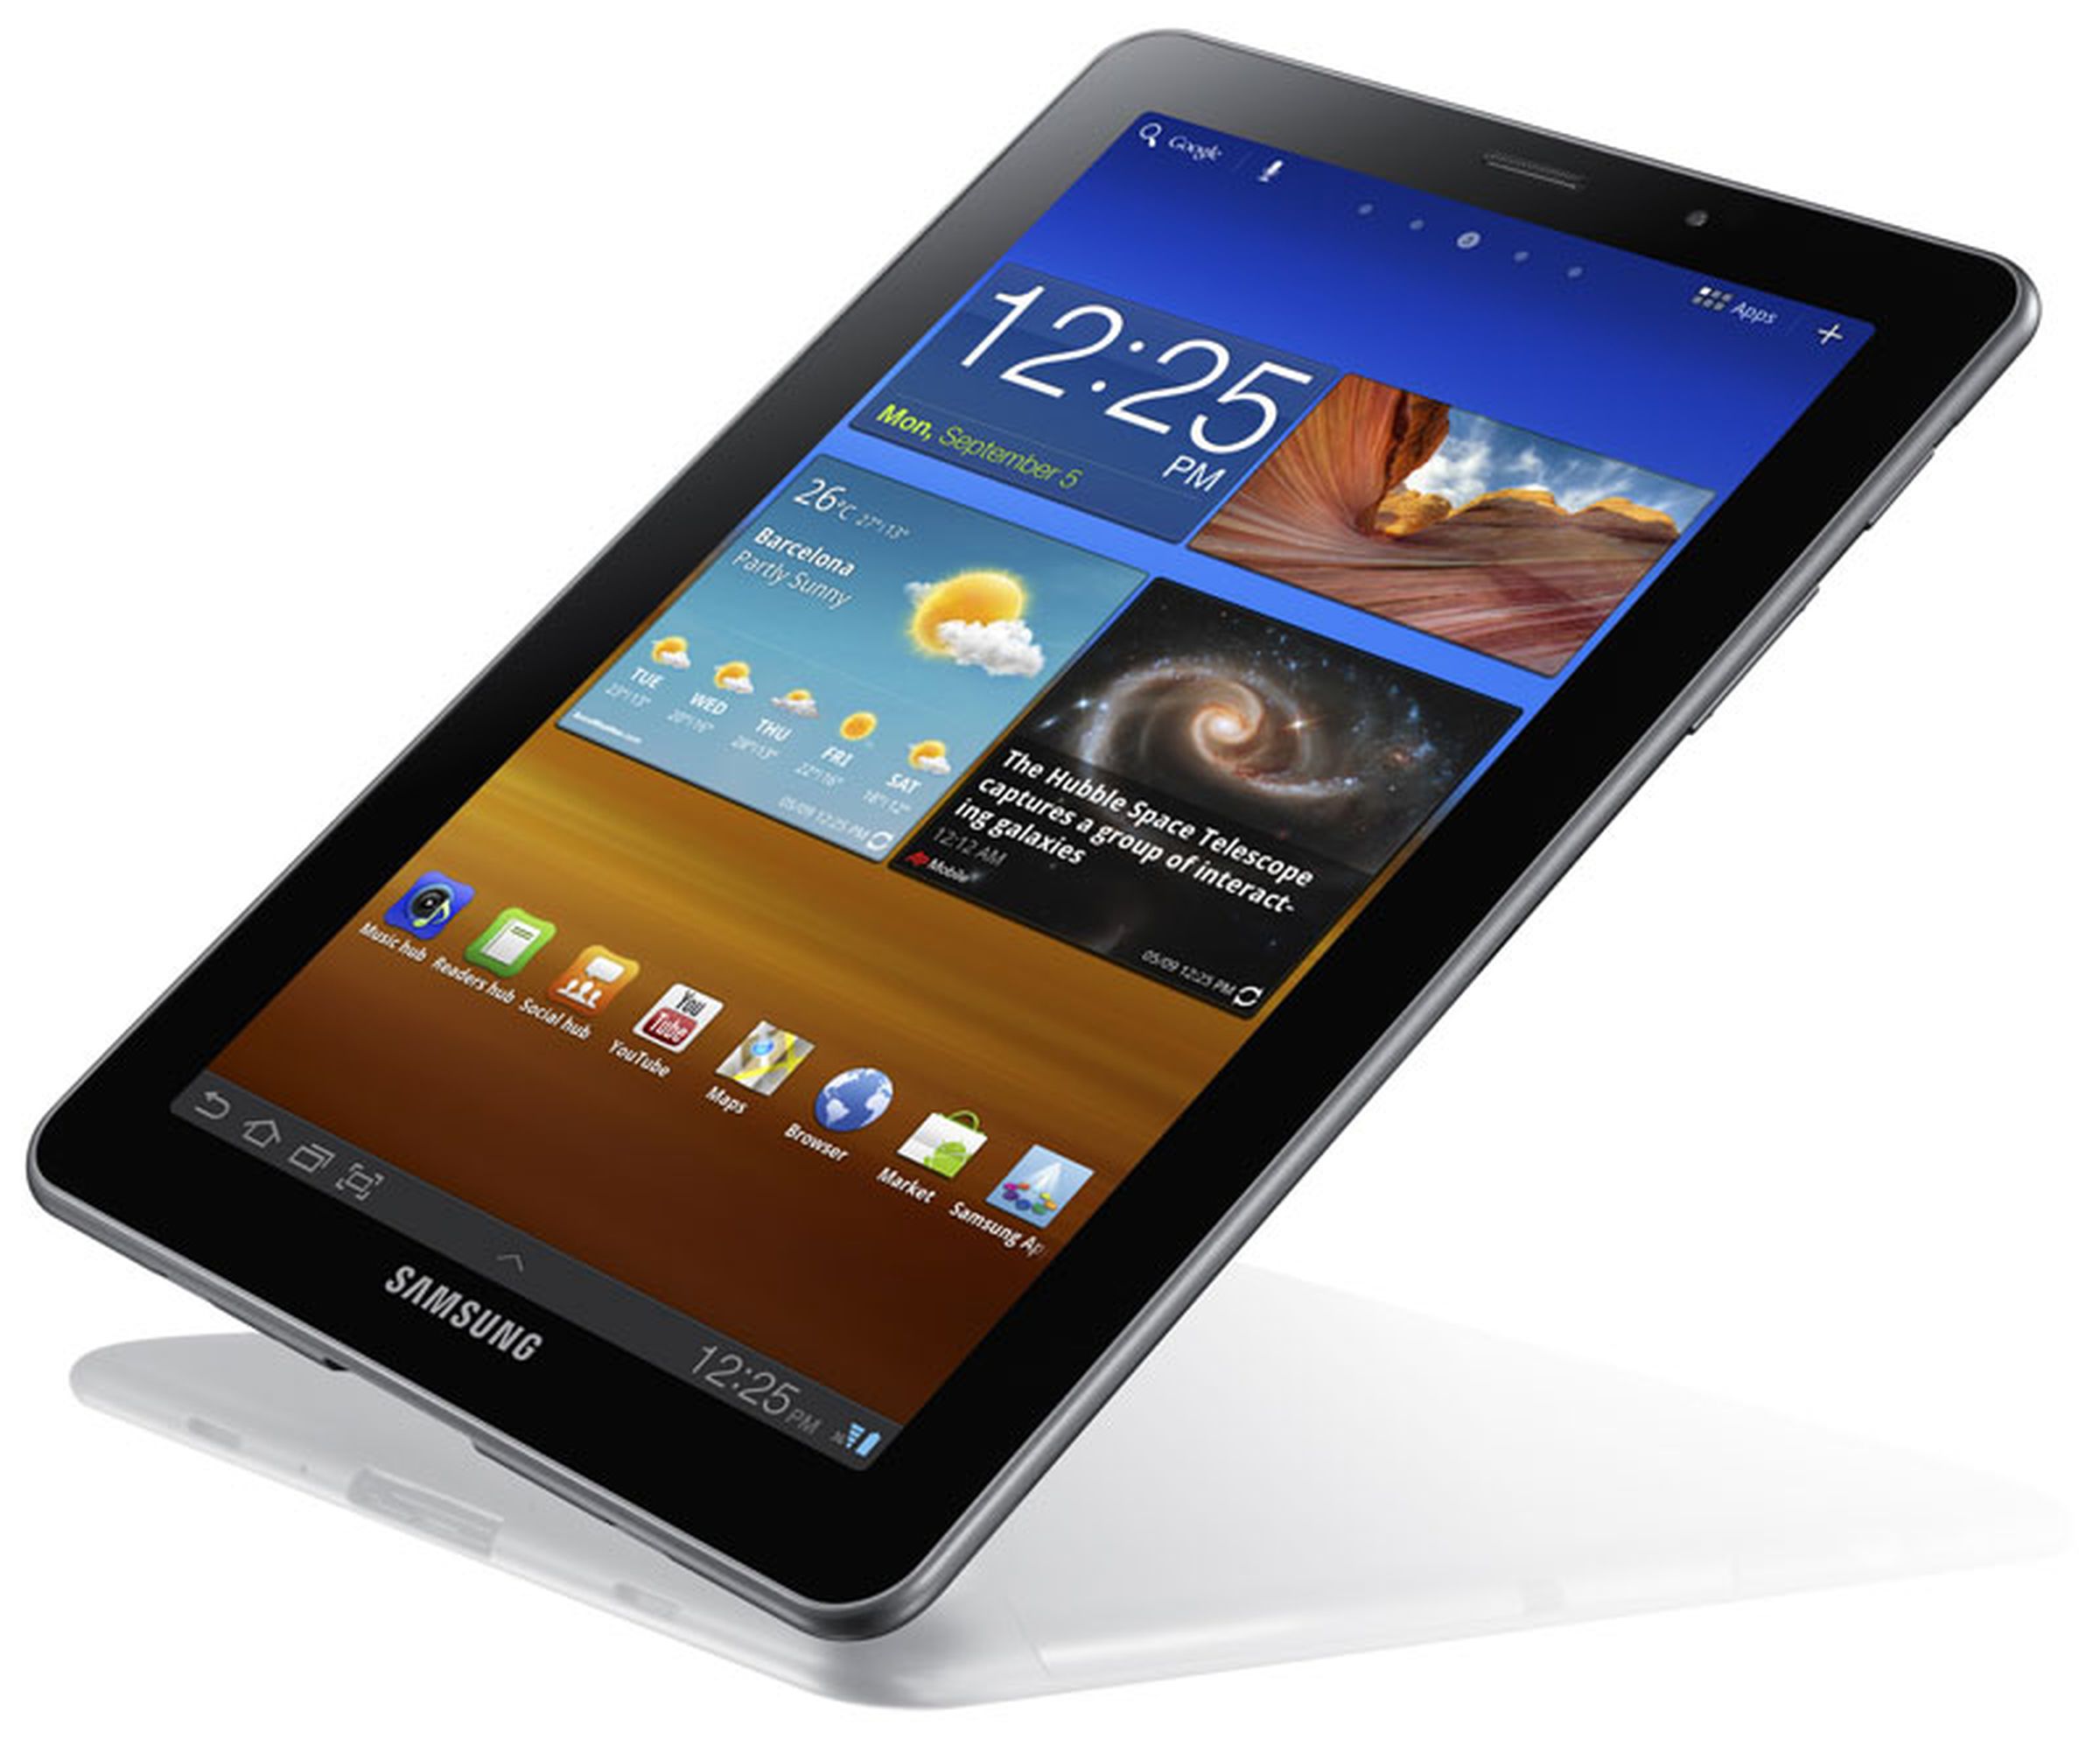 Samsung Galaxy Tab 7.7 press photos